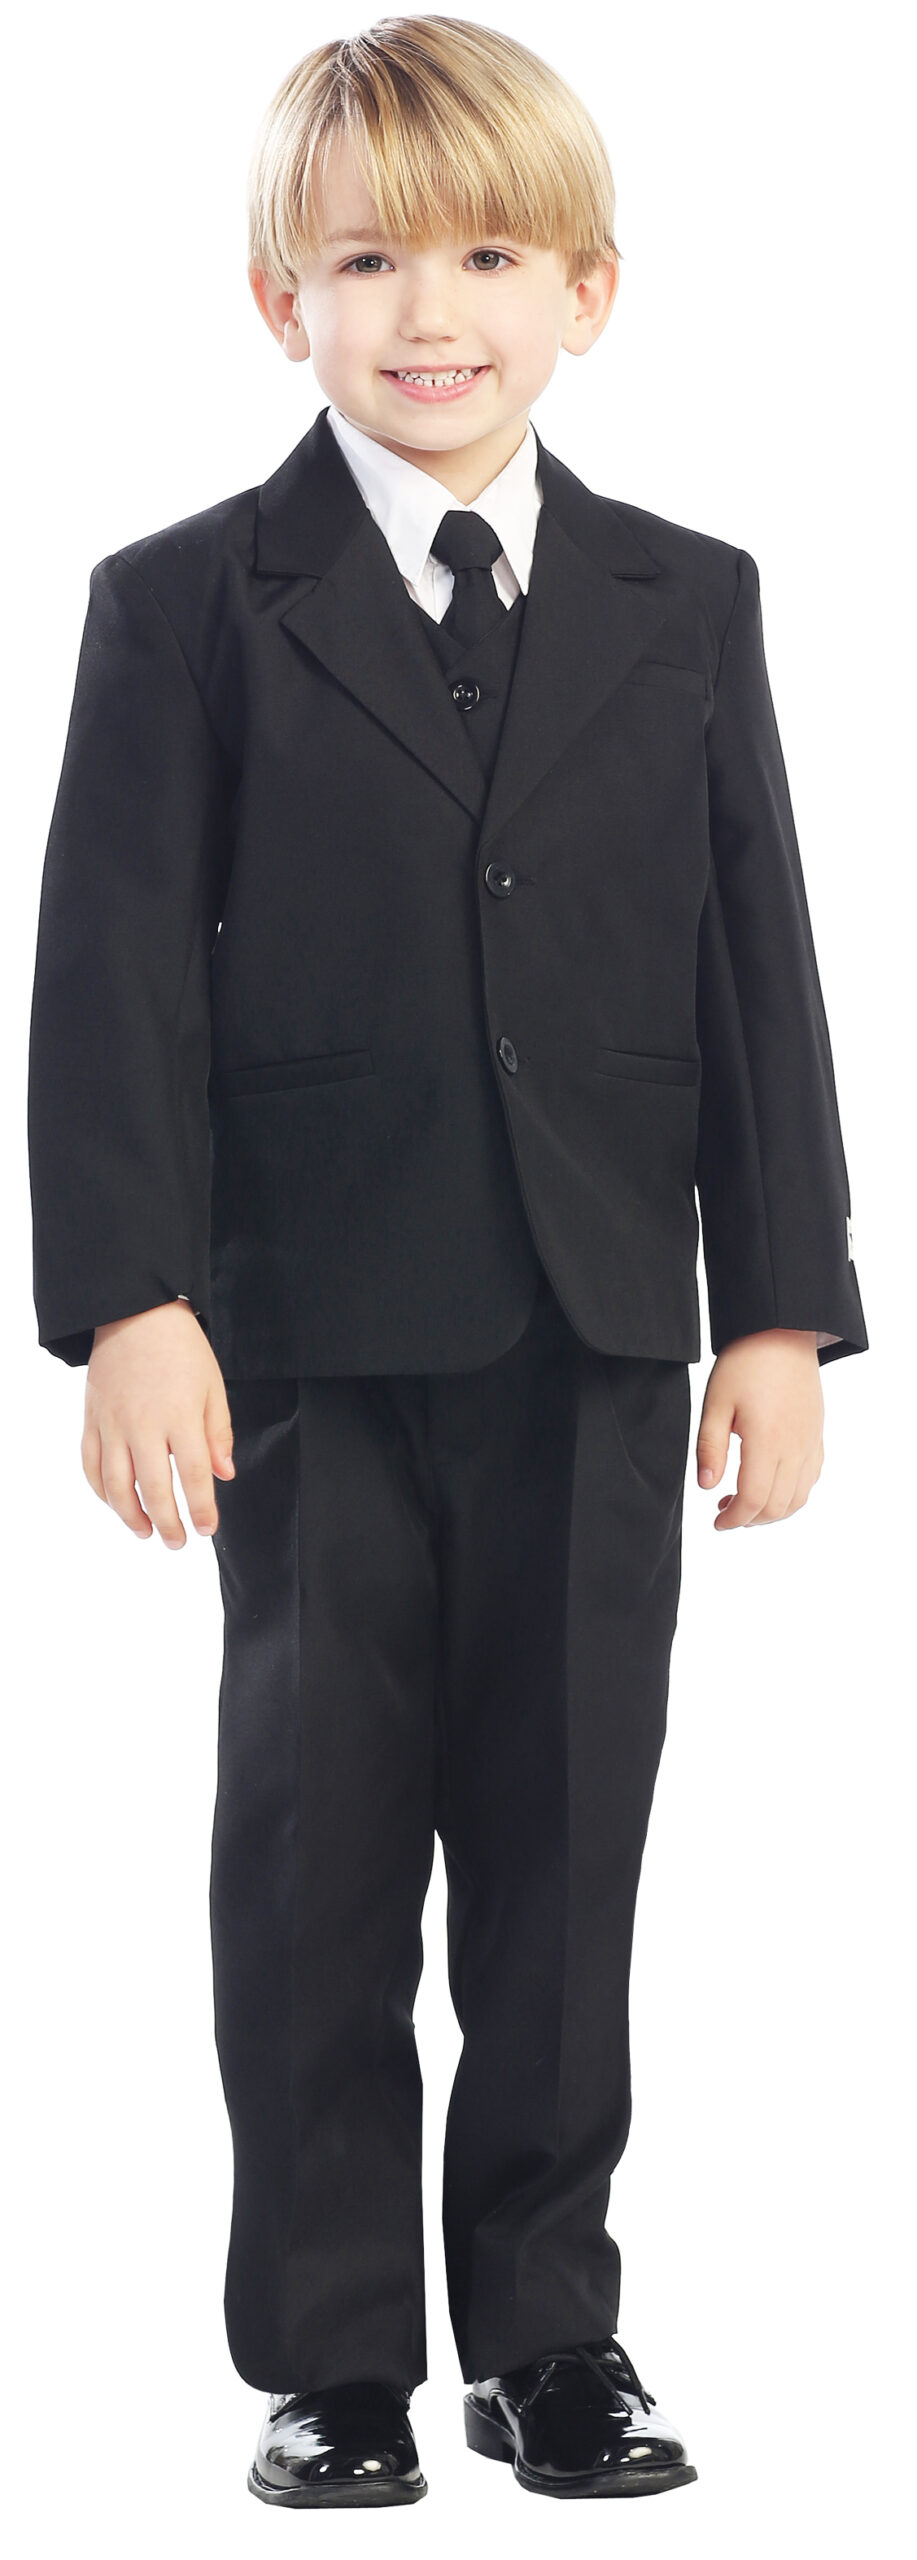 Avery Hill 5-Piece Boy's 2-Button Dress Suit Full-Back Vest - Black Size 12